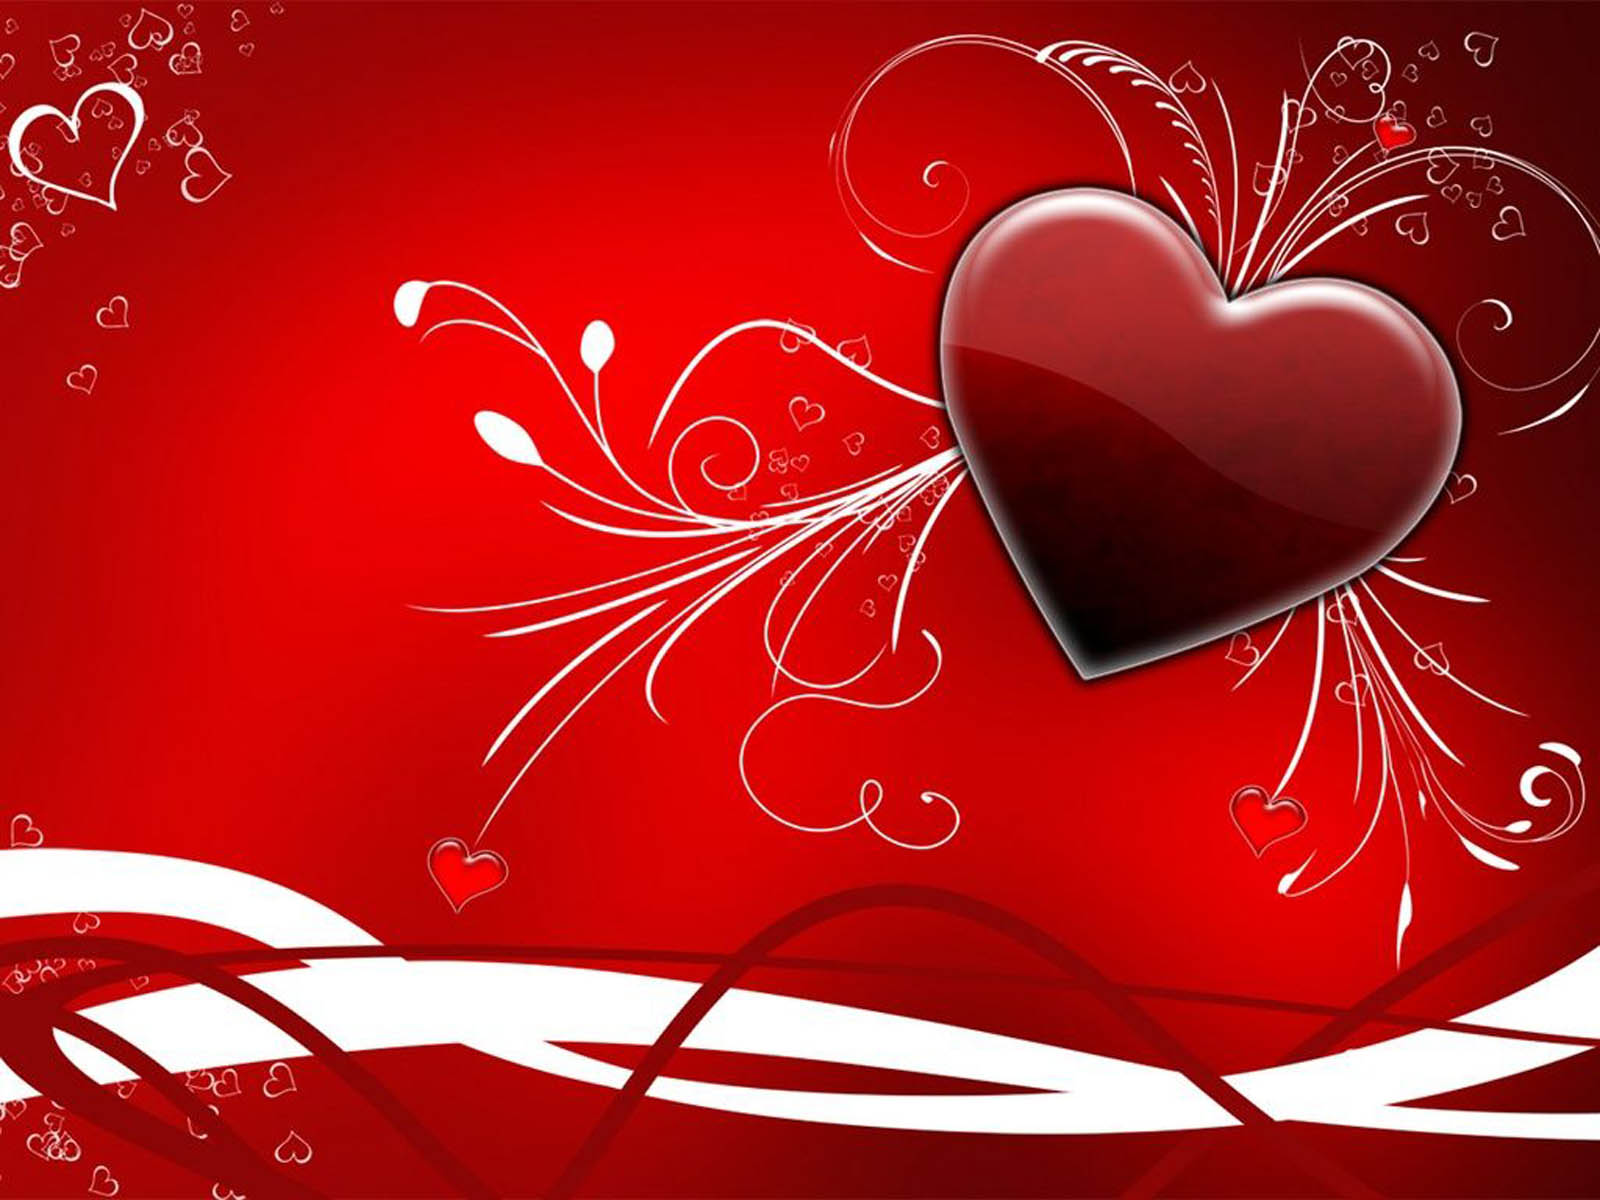 愛のテーマの壁紙,心臓,赤,愛,バレンタイン・デー,心臓